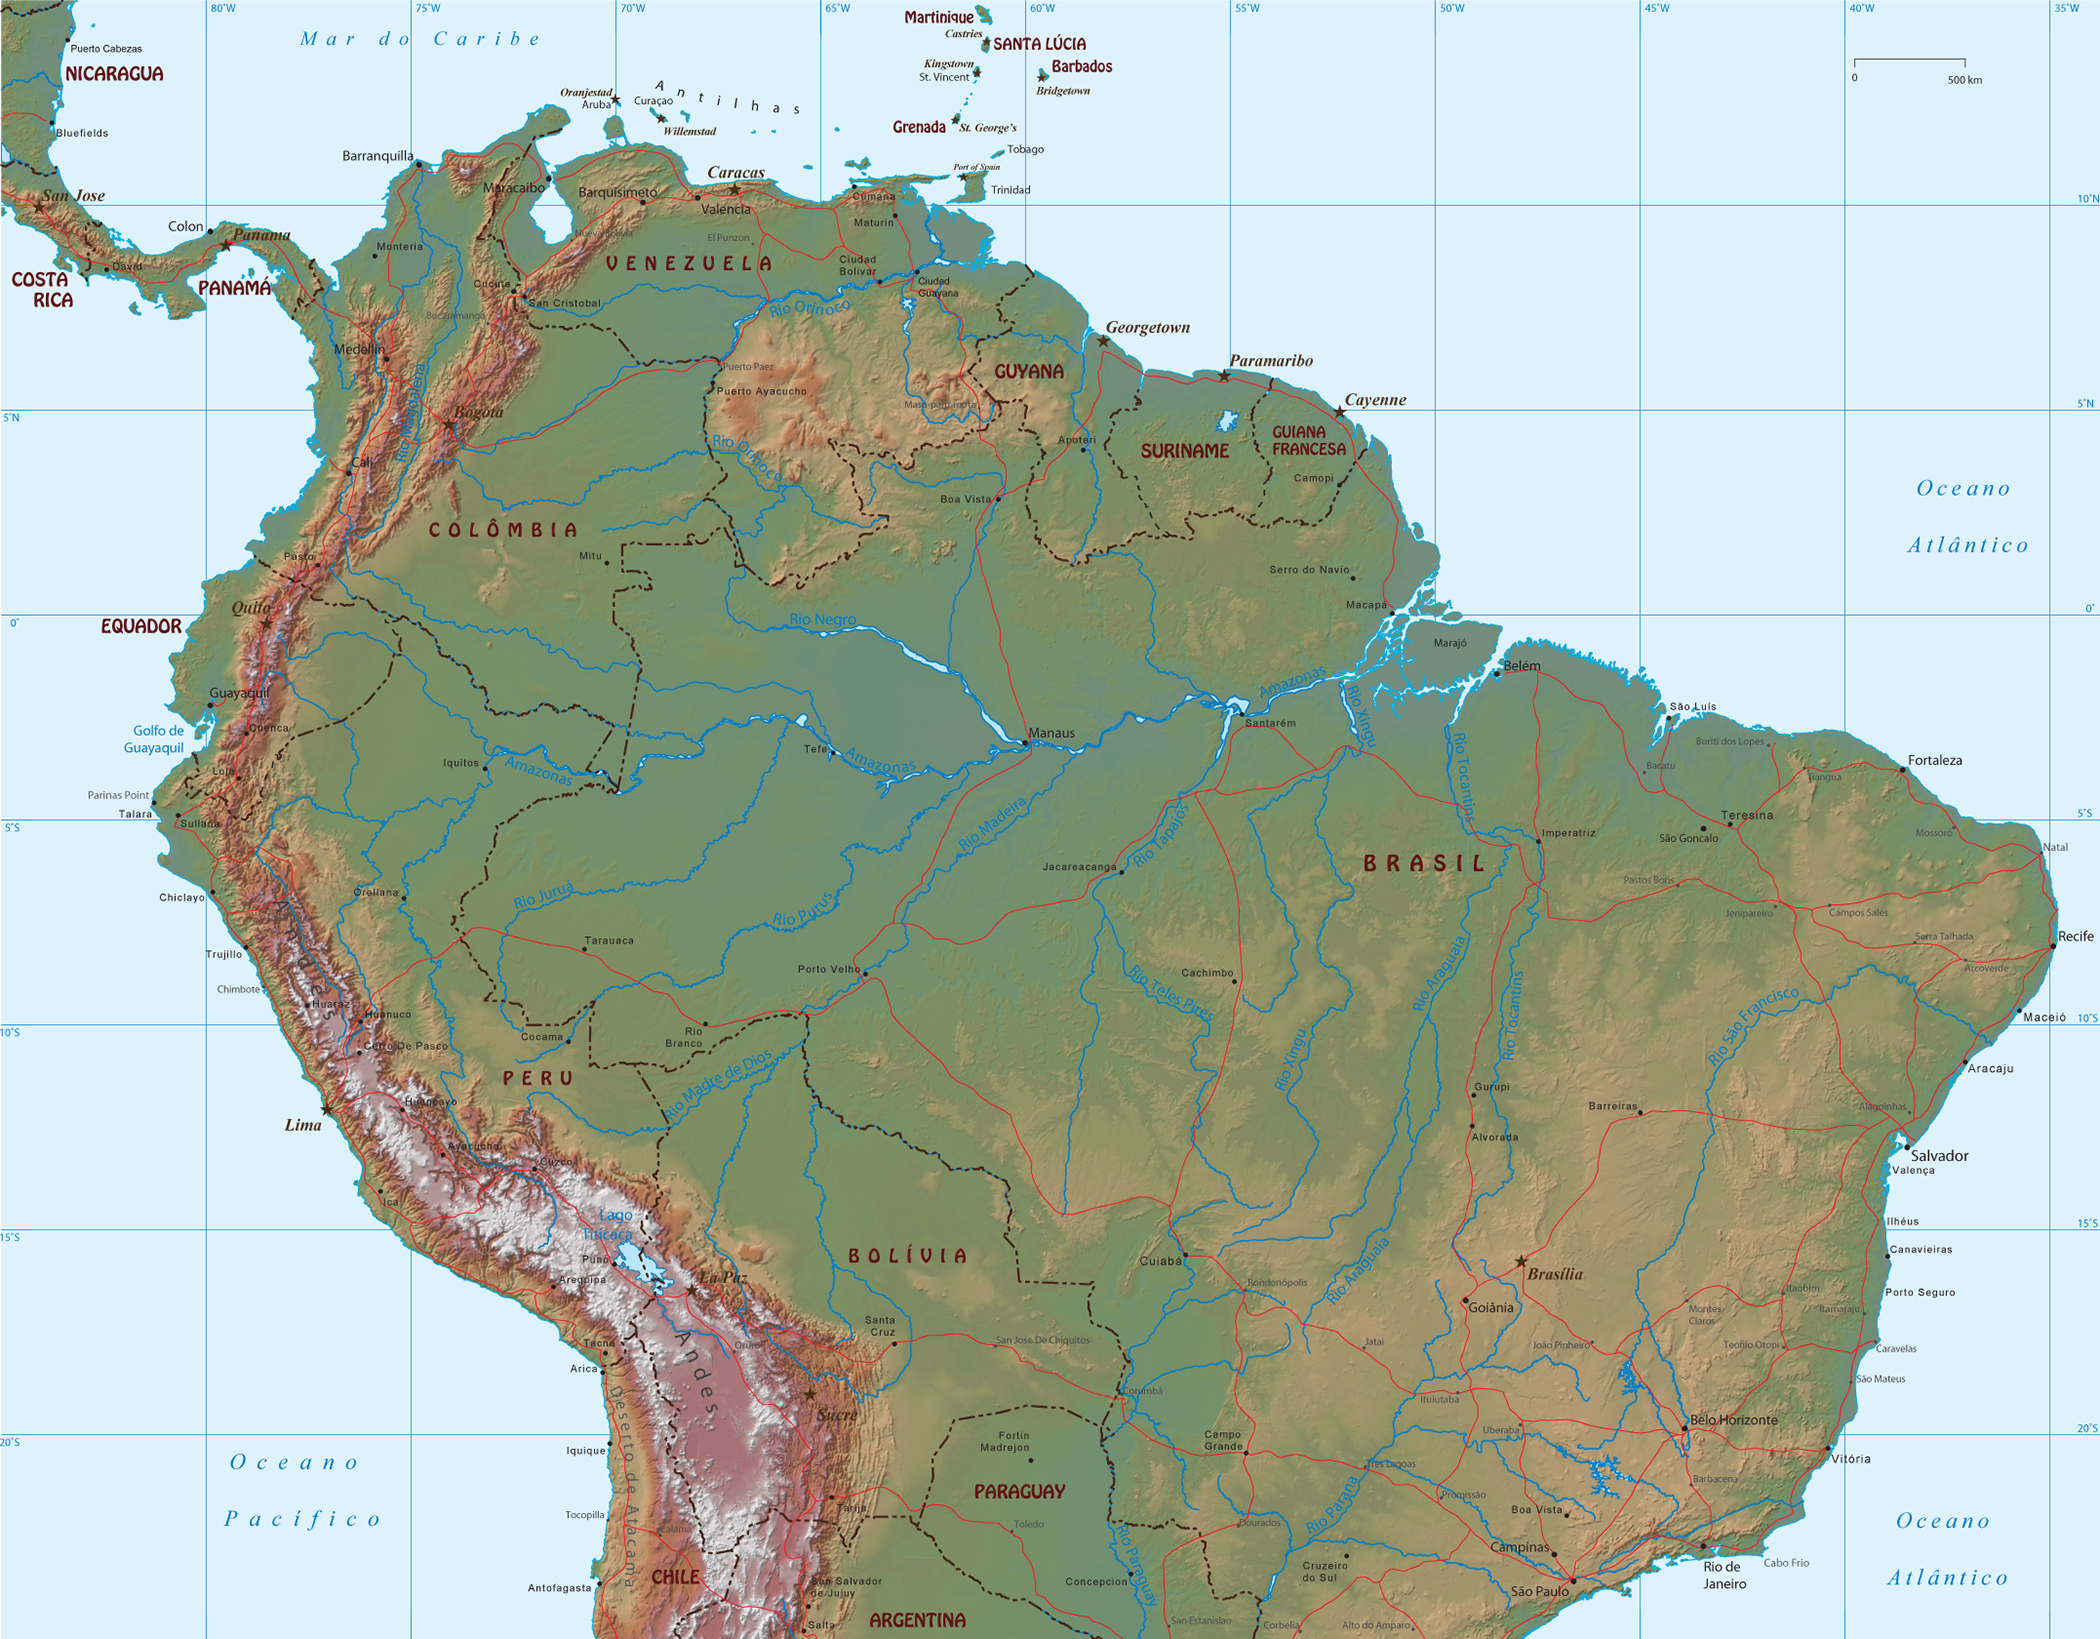 (Amazon River)